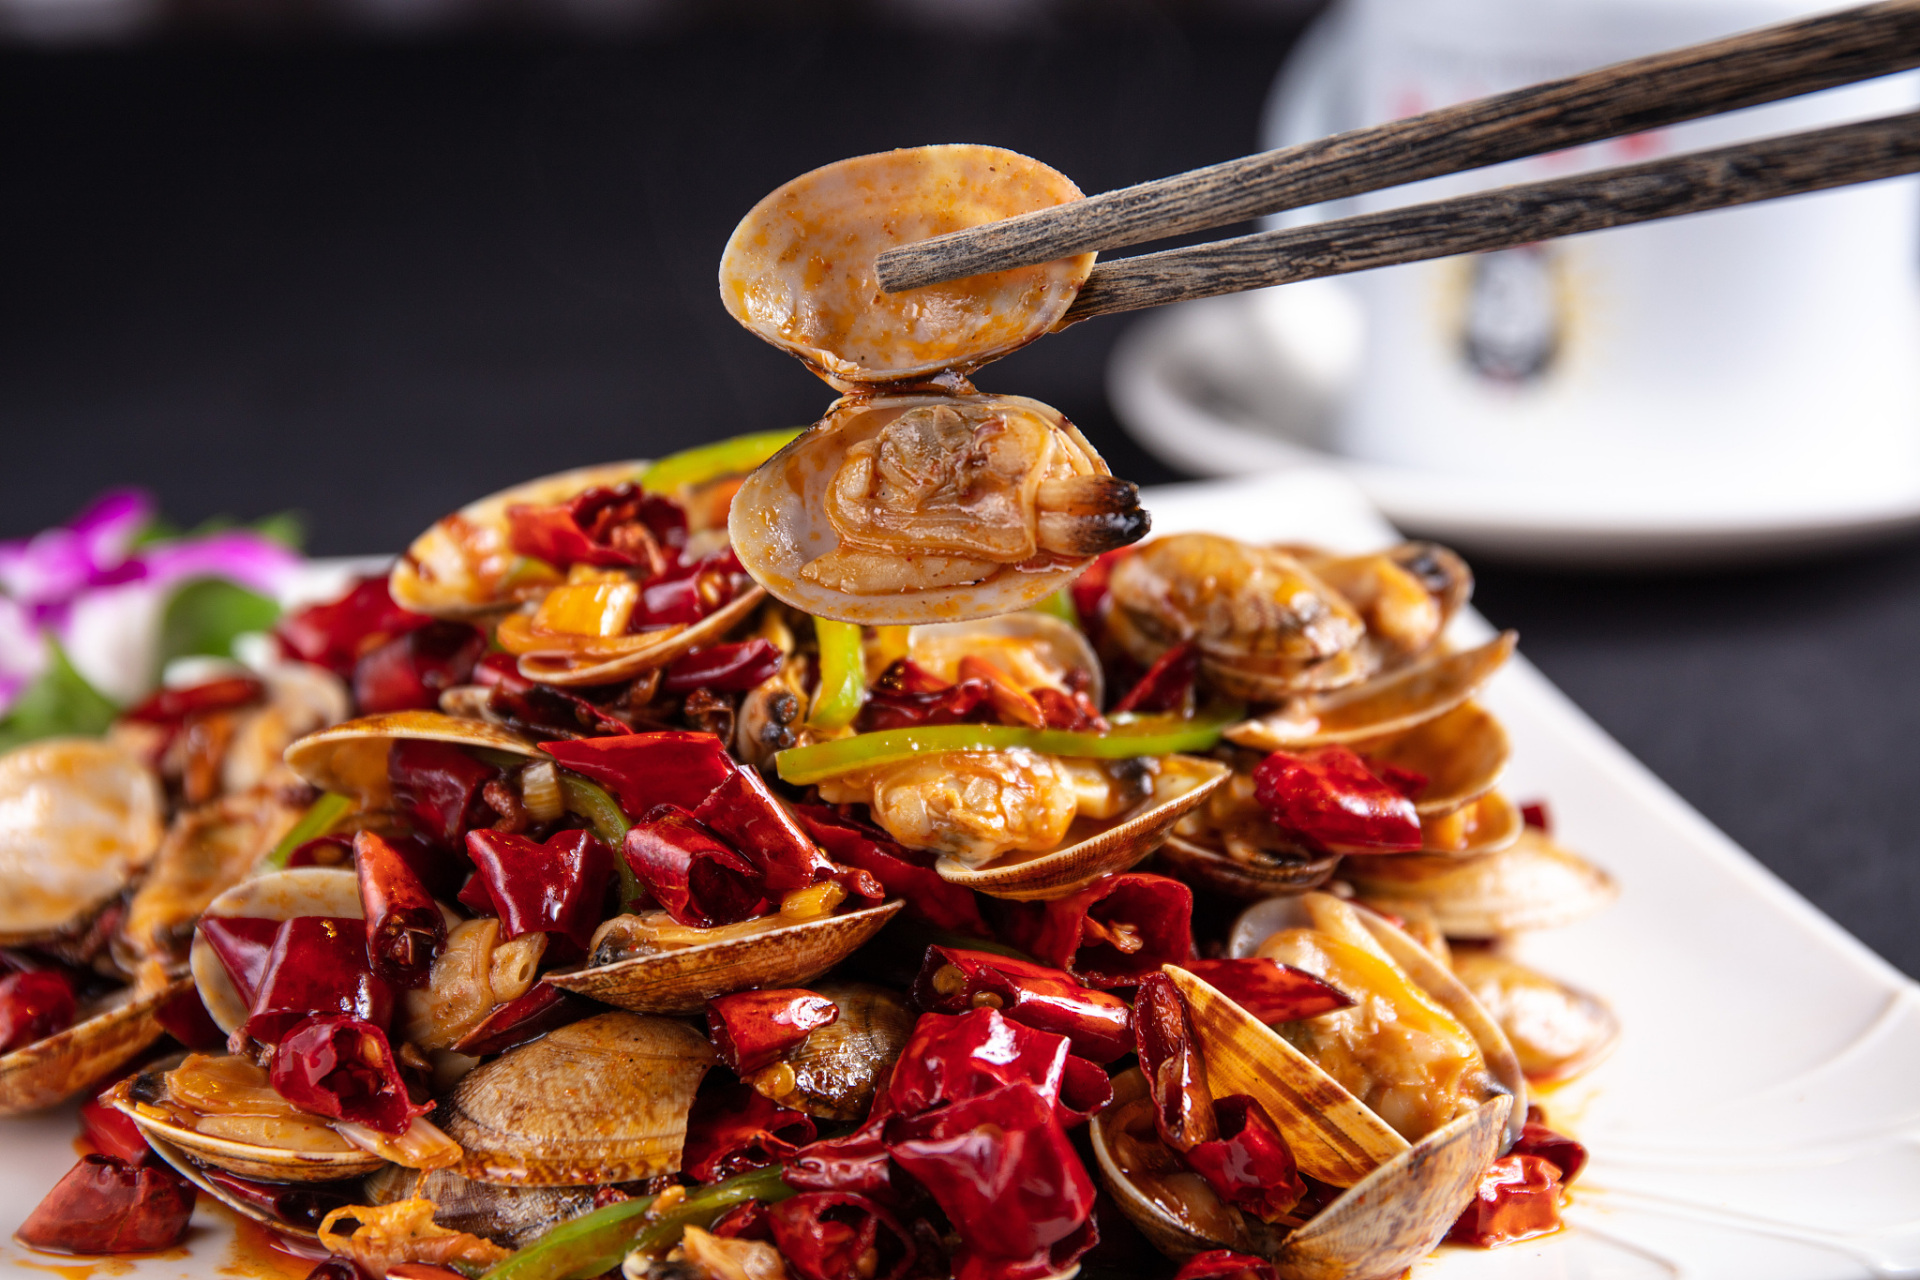 要说青岛最有代表性的美食,辣炒蛤蜊可谓是当之无愧